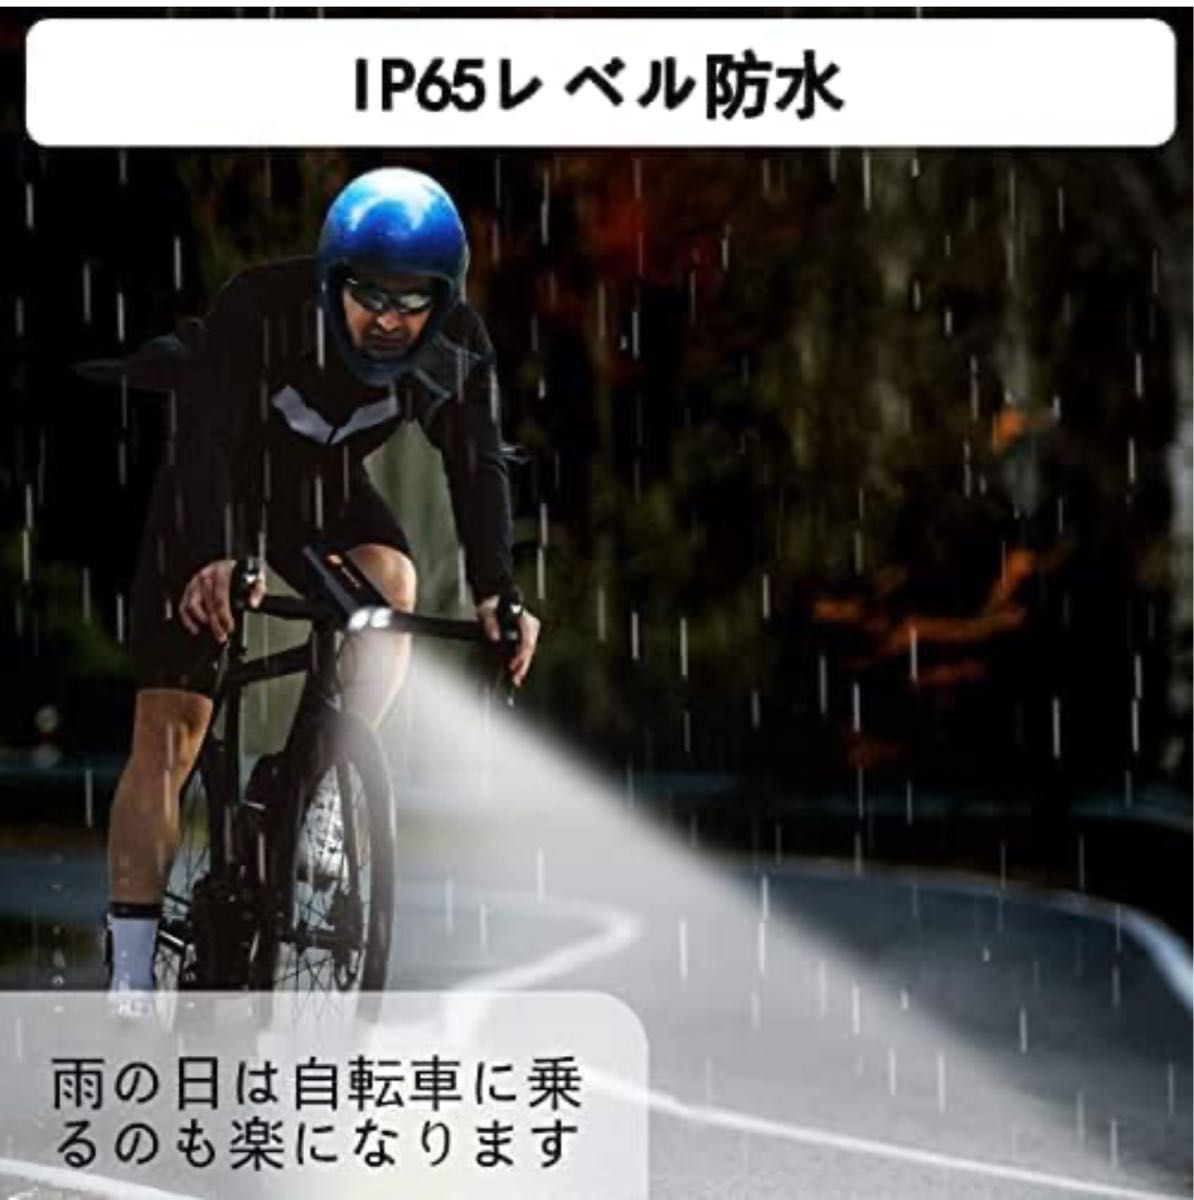 自転車 ライト LED 3000mAh大容量 1200ルーメン LEDヘッドライト USB充電式 PSE認証済 防水